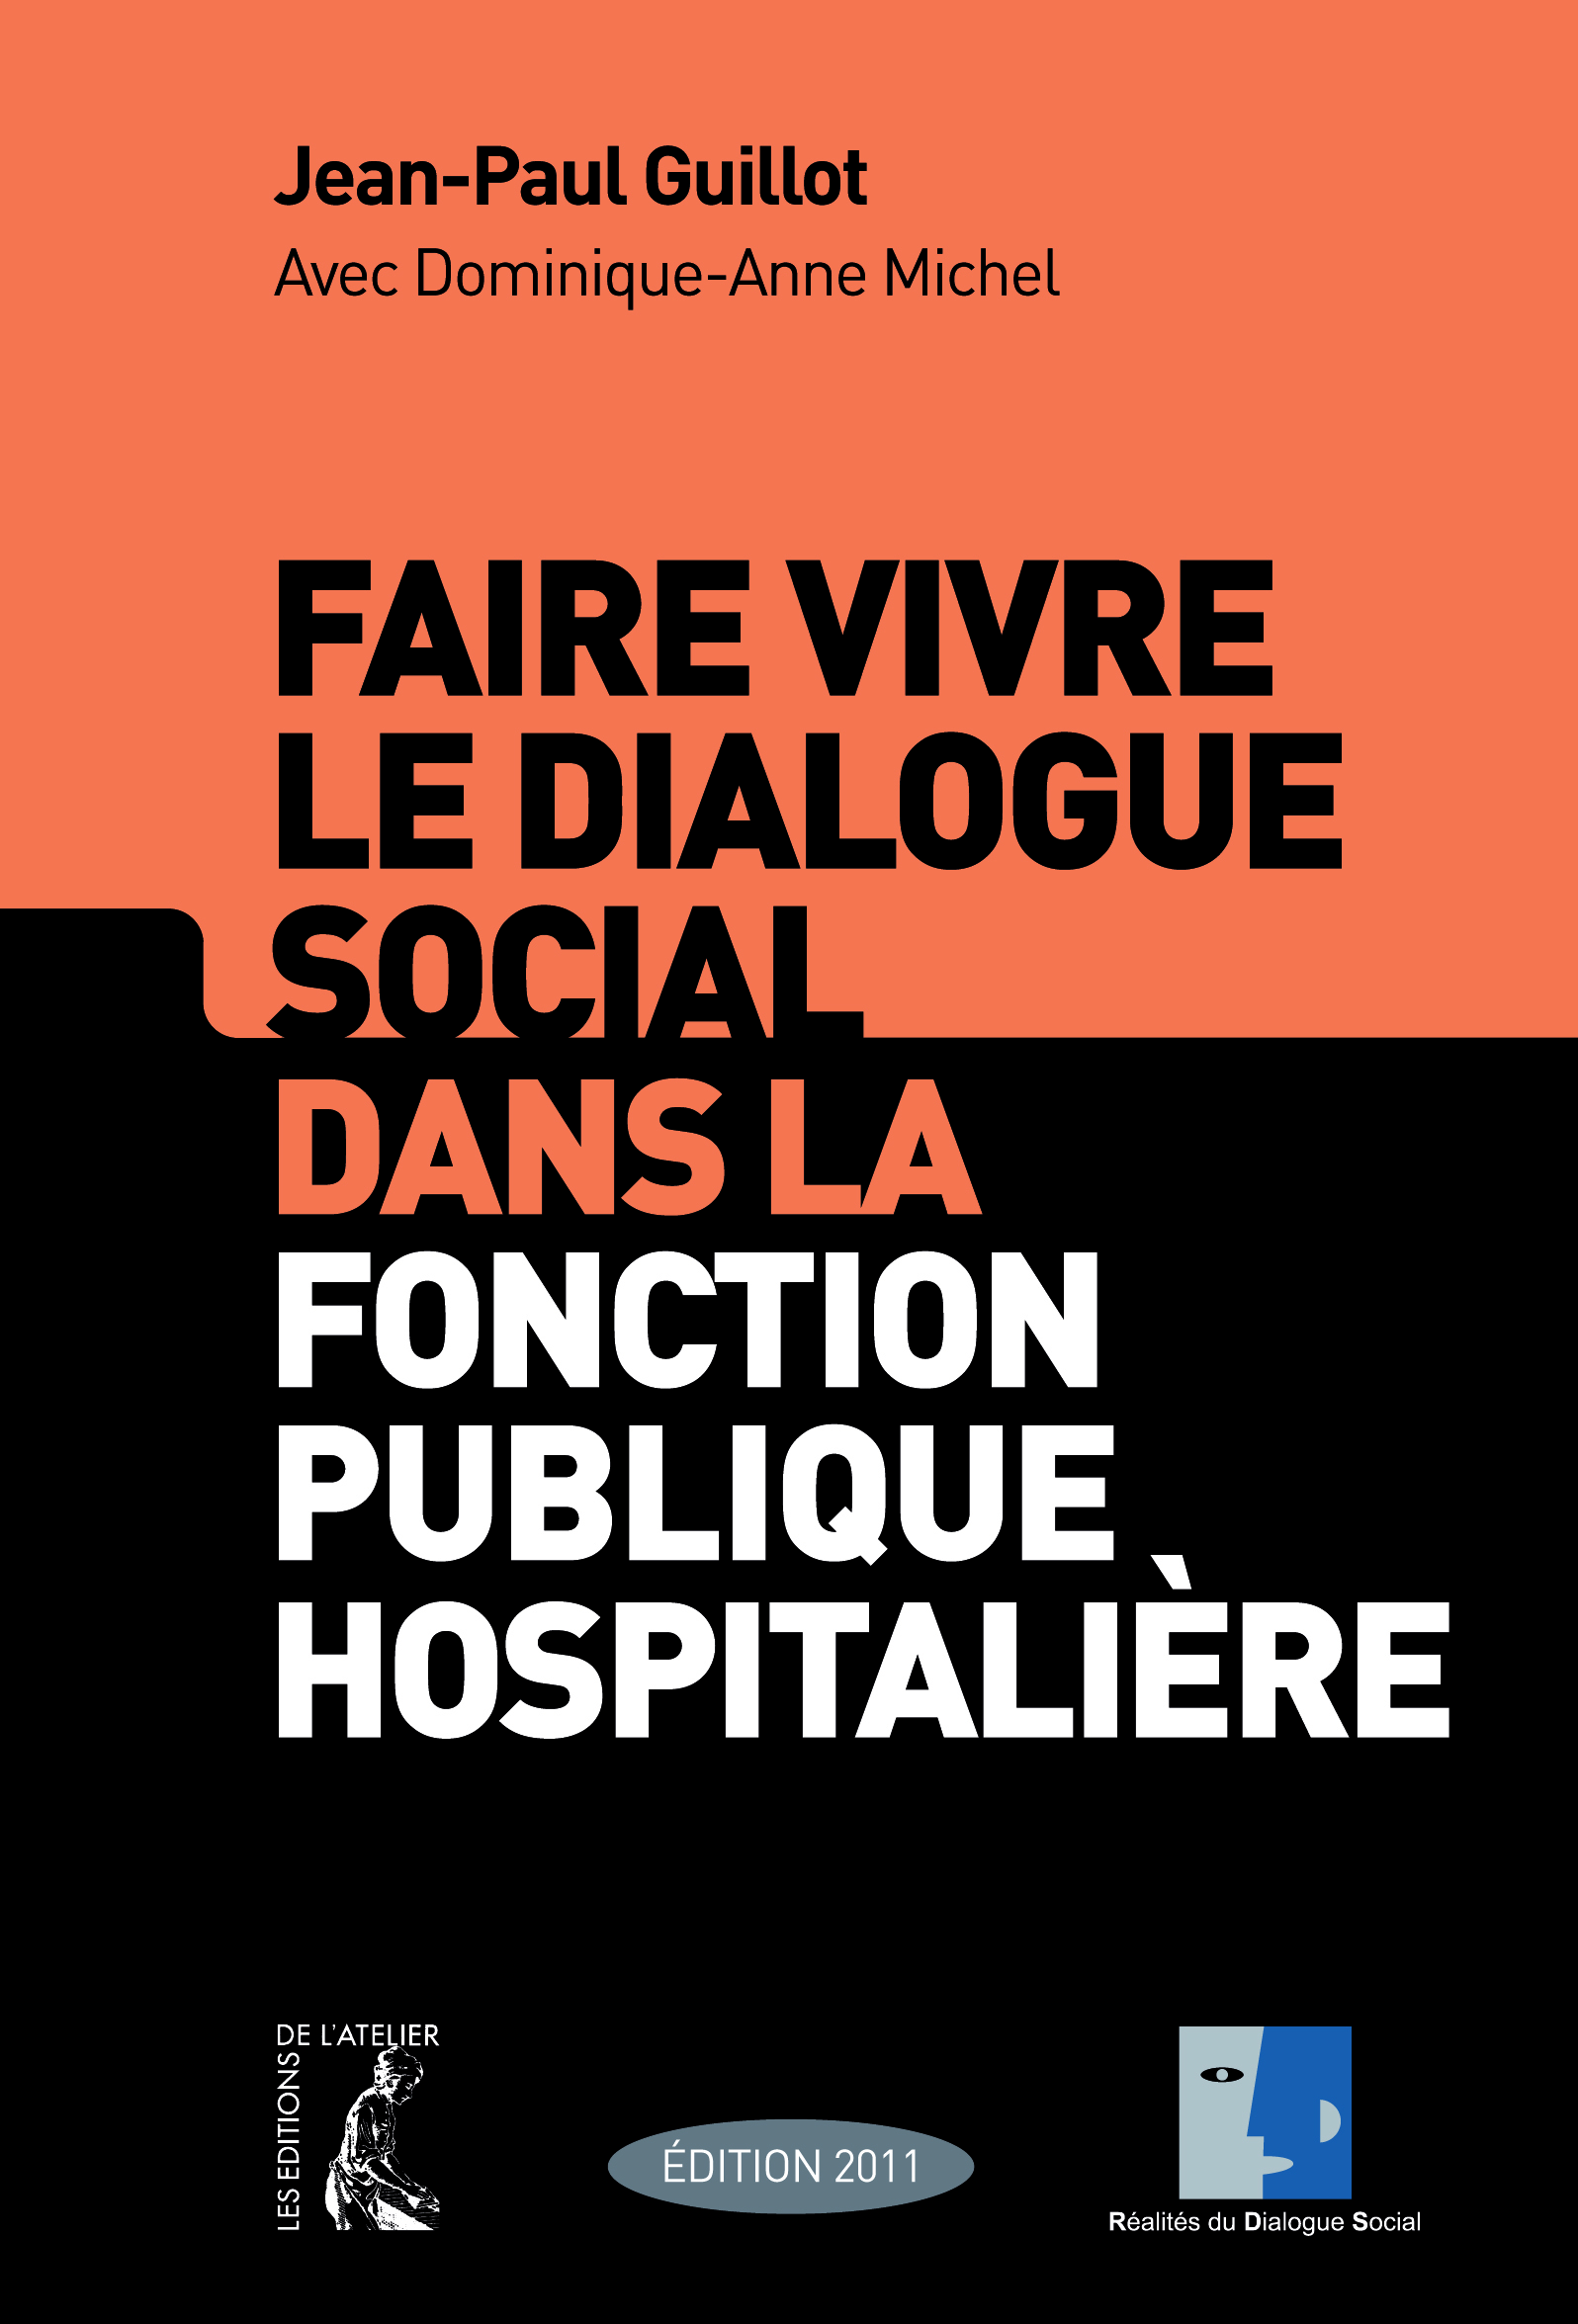 Faire vivre le dialogue social dans la fonction publique hospitalière - Jean-Paul Guillot, Dominique-Anne Michel - Éditions de l'Atelier